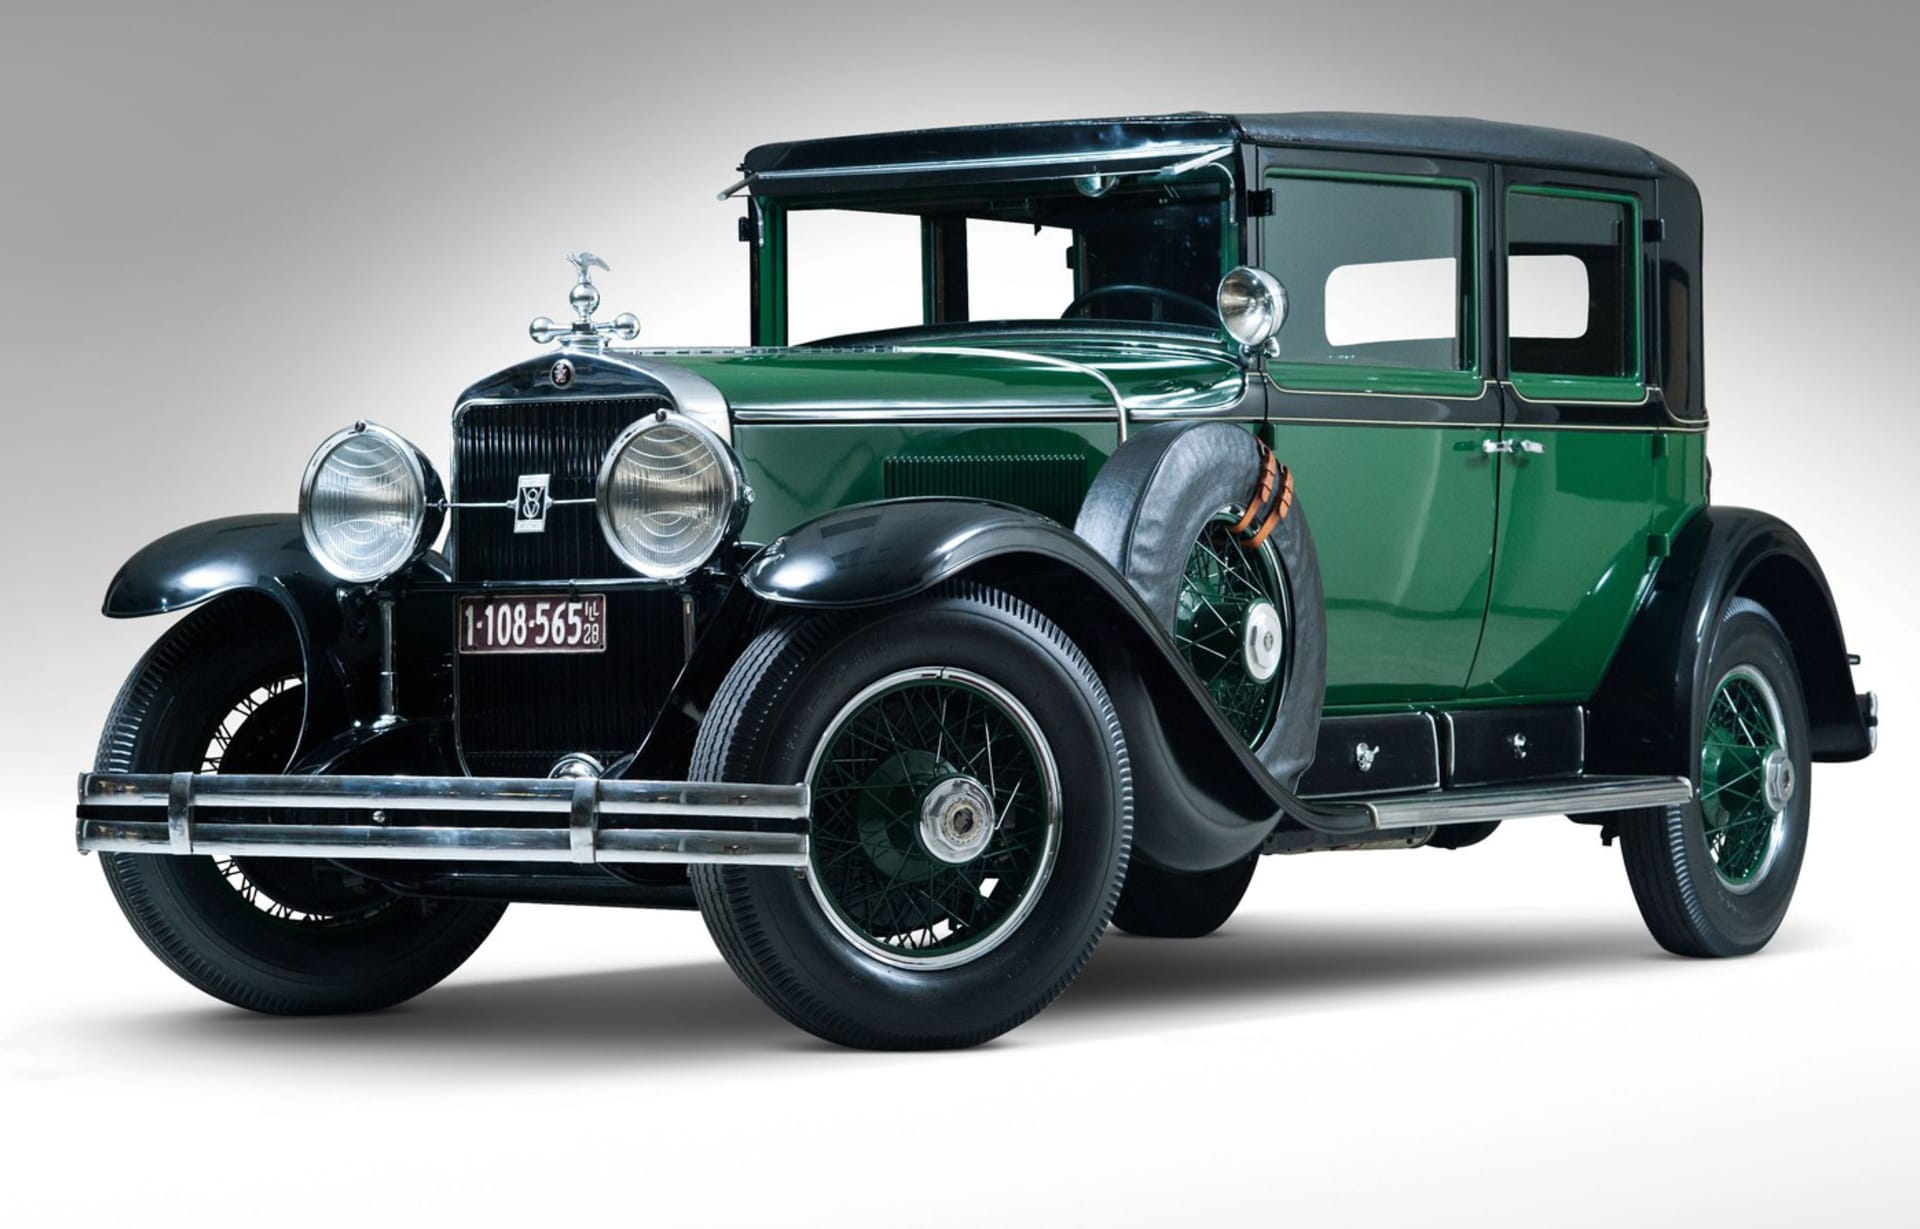 Neprůstřelný Cadillac V-8 Town Sedan z roku 1928, který používal Al Capone, je opět na prodej. Současný majitel za něj požaduje rovný milion dolarů.